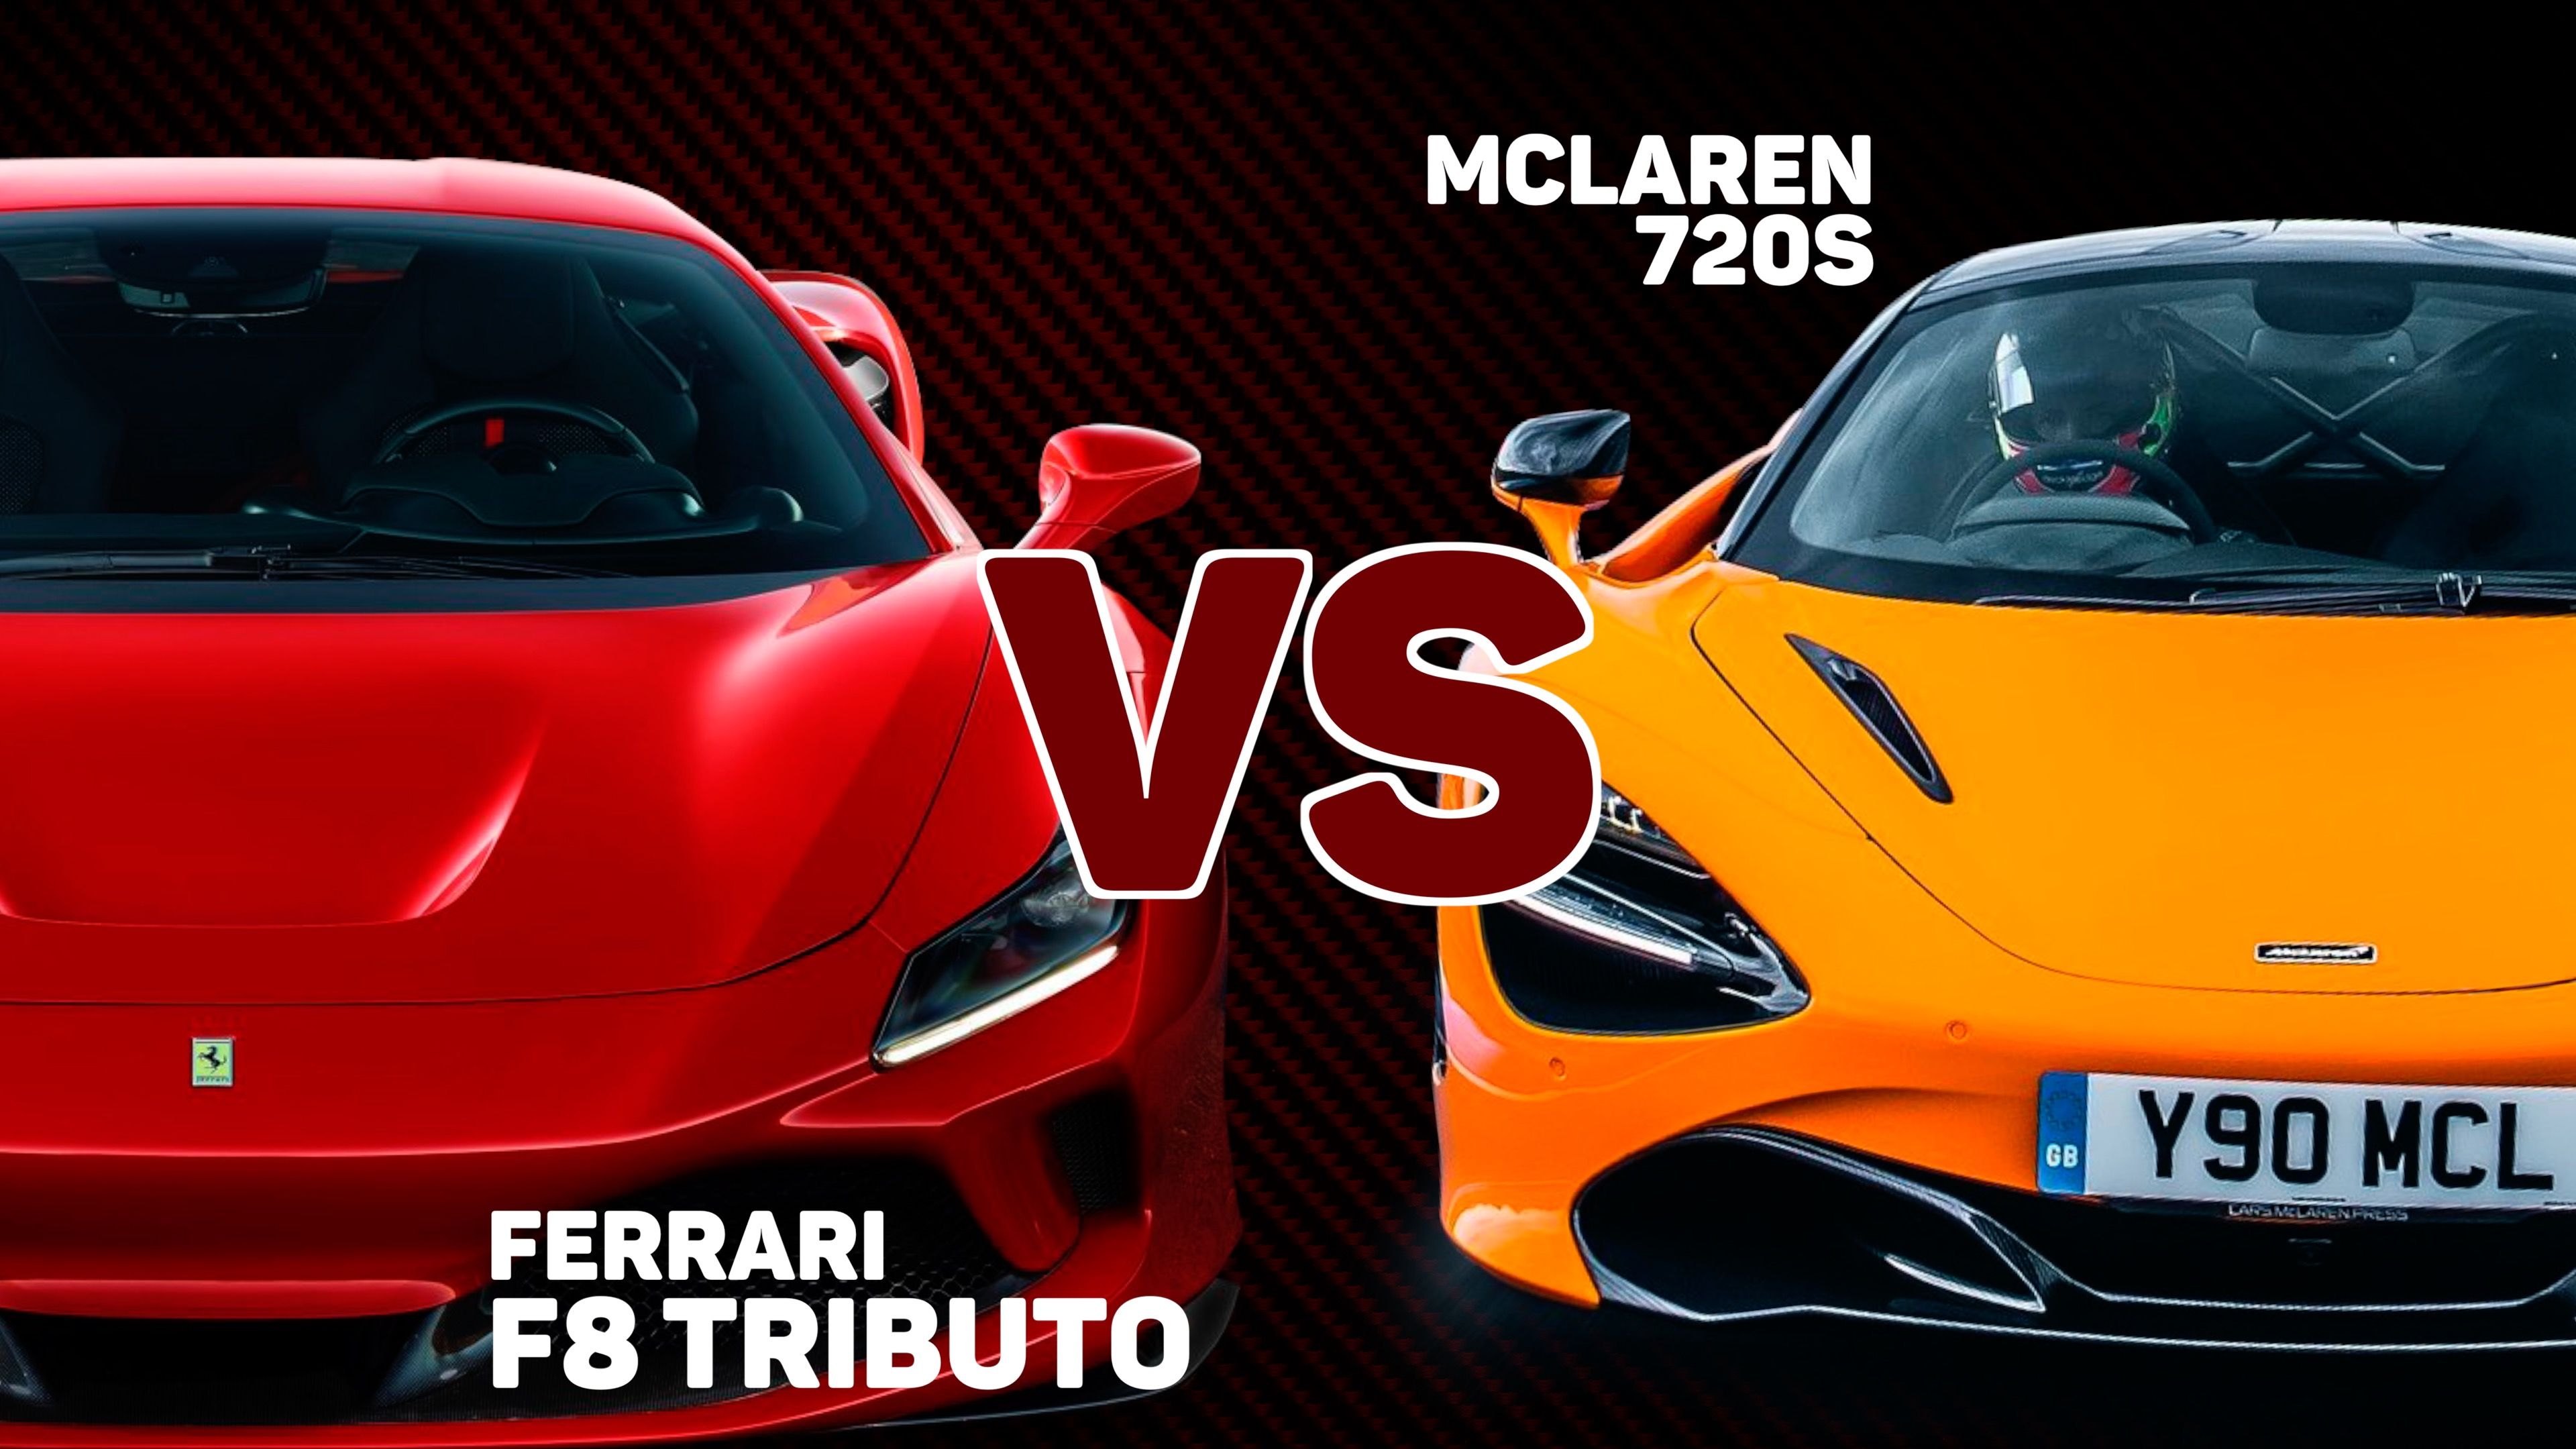 VÍDEO: Ferrari F8 Tributo o McLaren 720S, ¿Cuál es mejor?